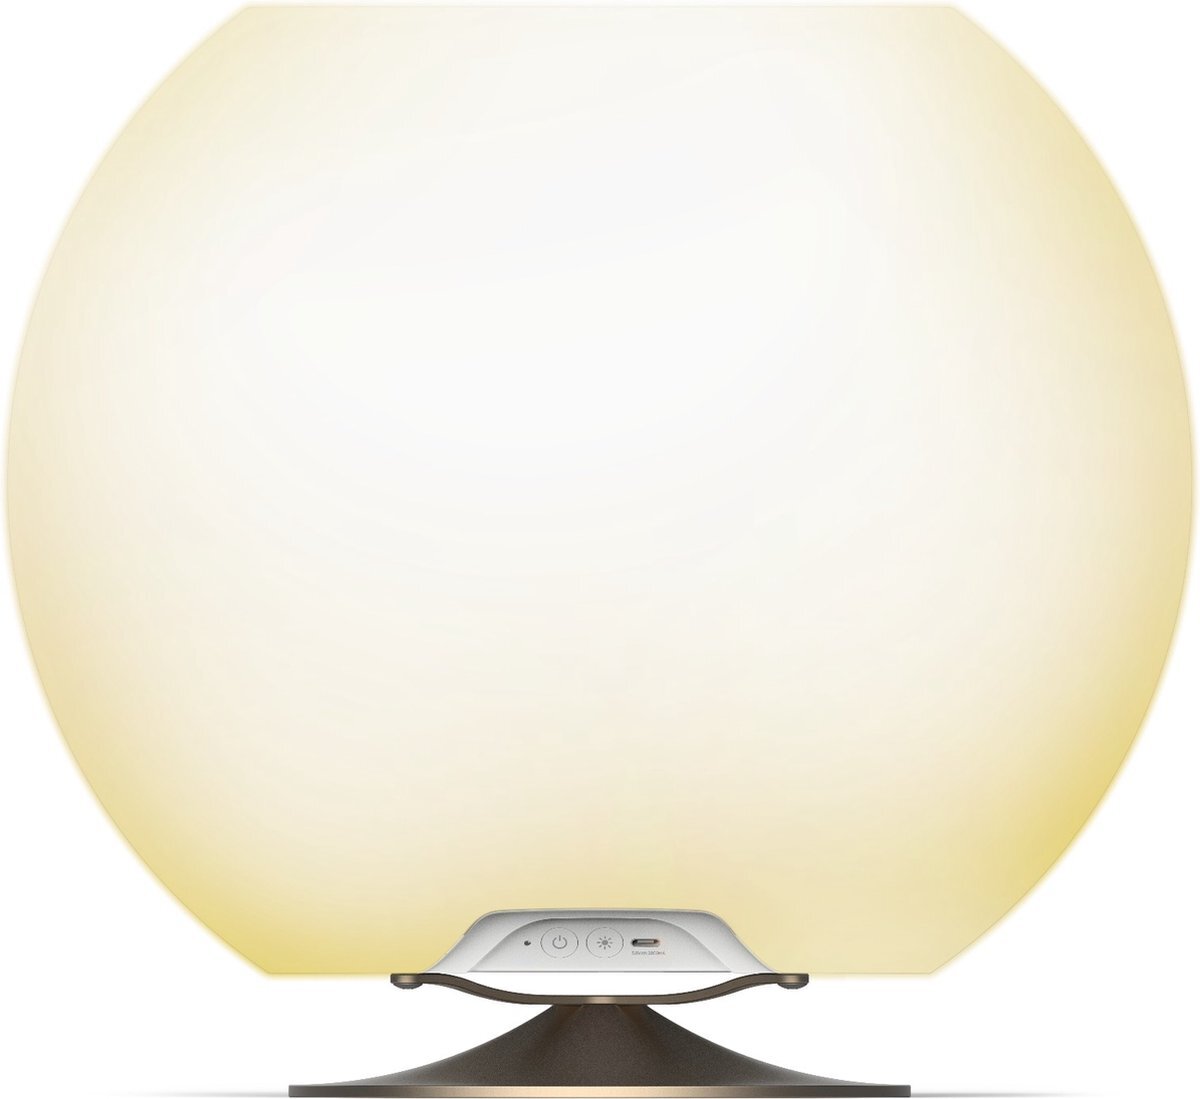 Kooduu Sphere Brushed Silver - Draagbare Bluetooth Luidspreker, Dimbare LED Lamp en Wijnkoeler - Muziek en licht voor binnen en buiten: feestjes, diners, verjaardagen, etc. wit